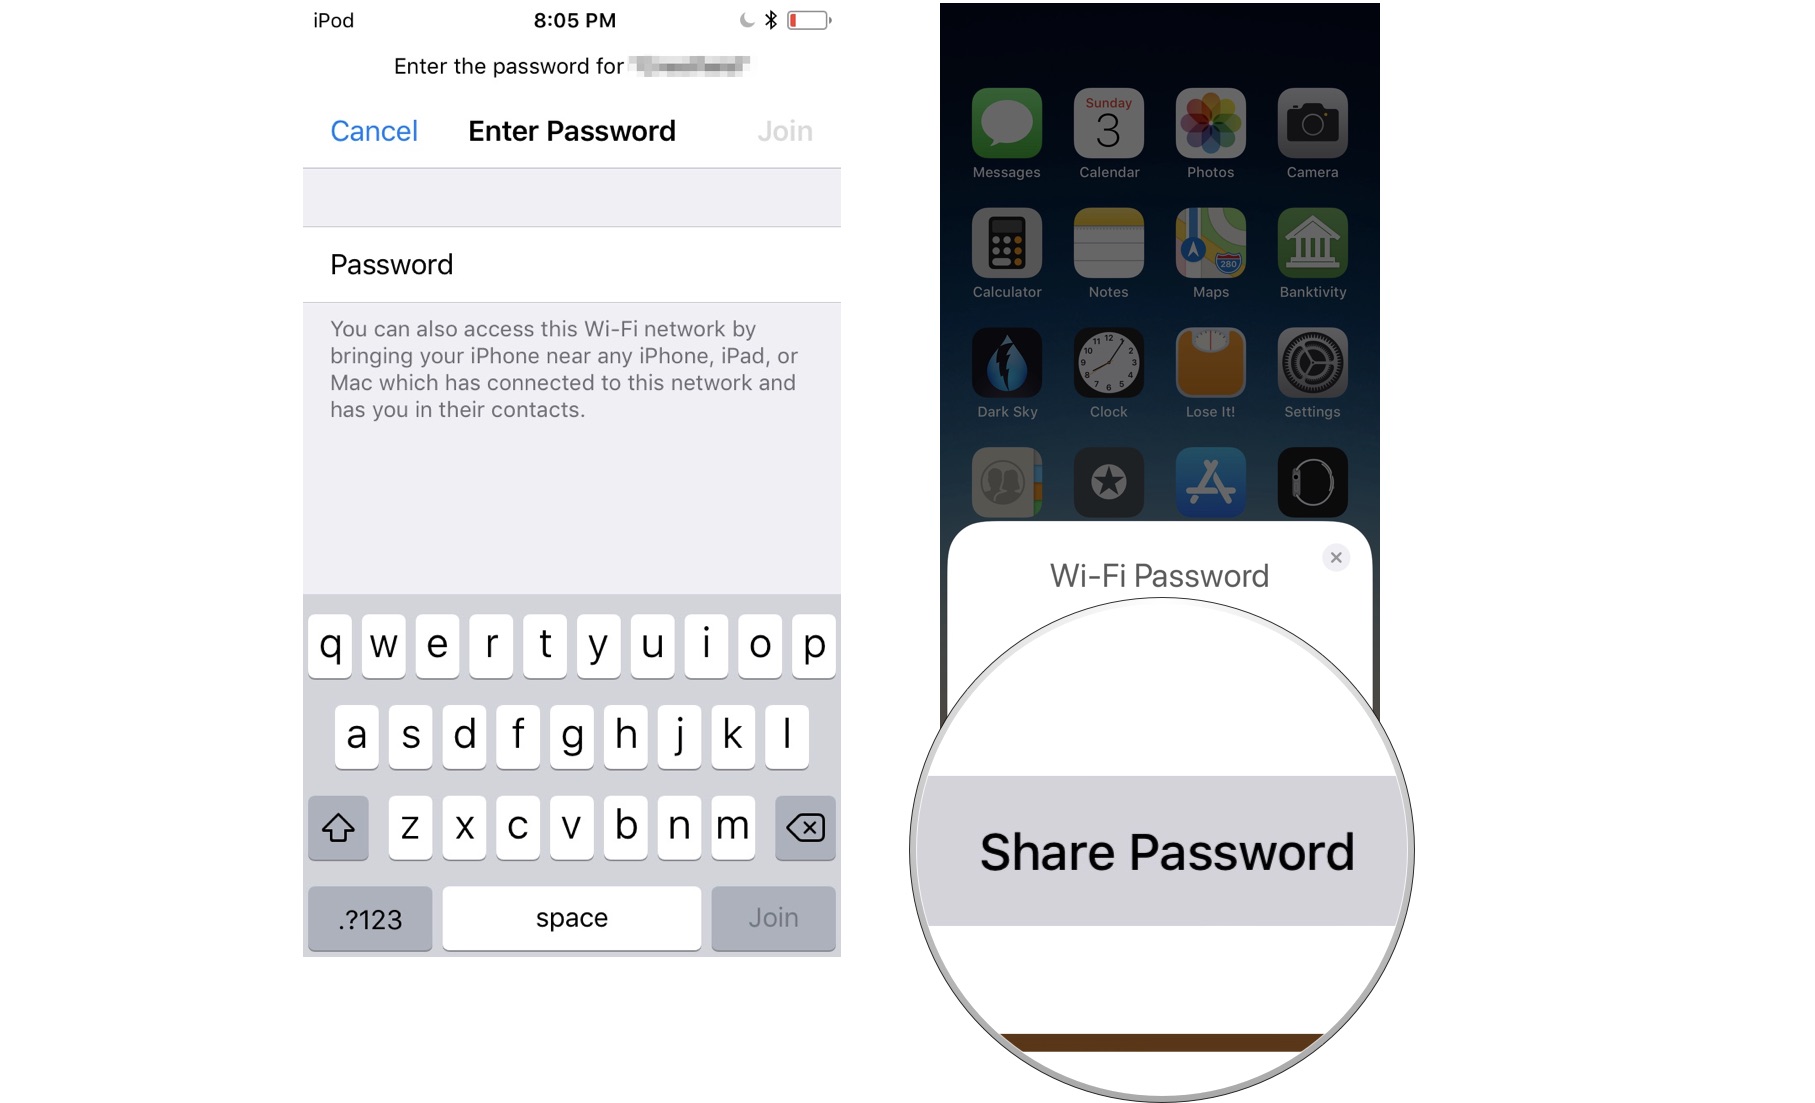 Нажмите Поделиться паролем со своего iPhone.